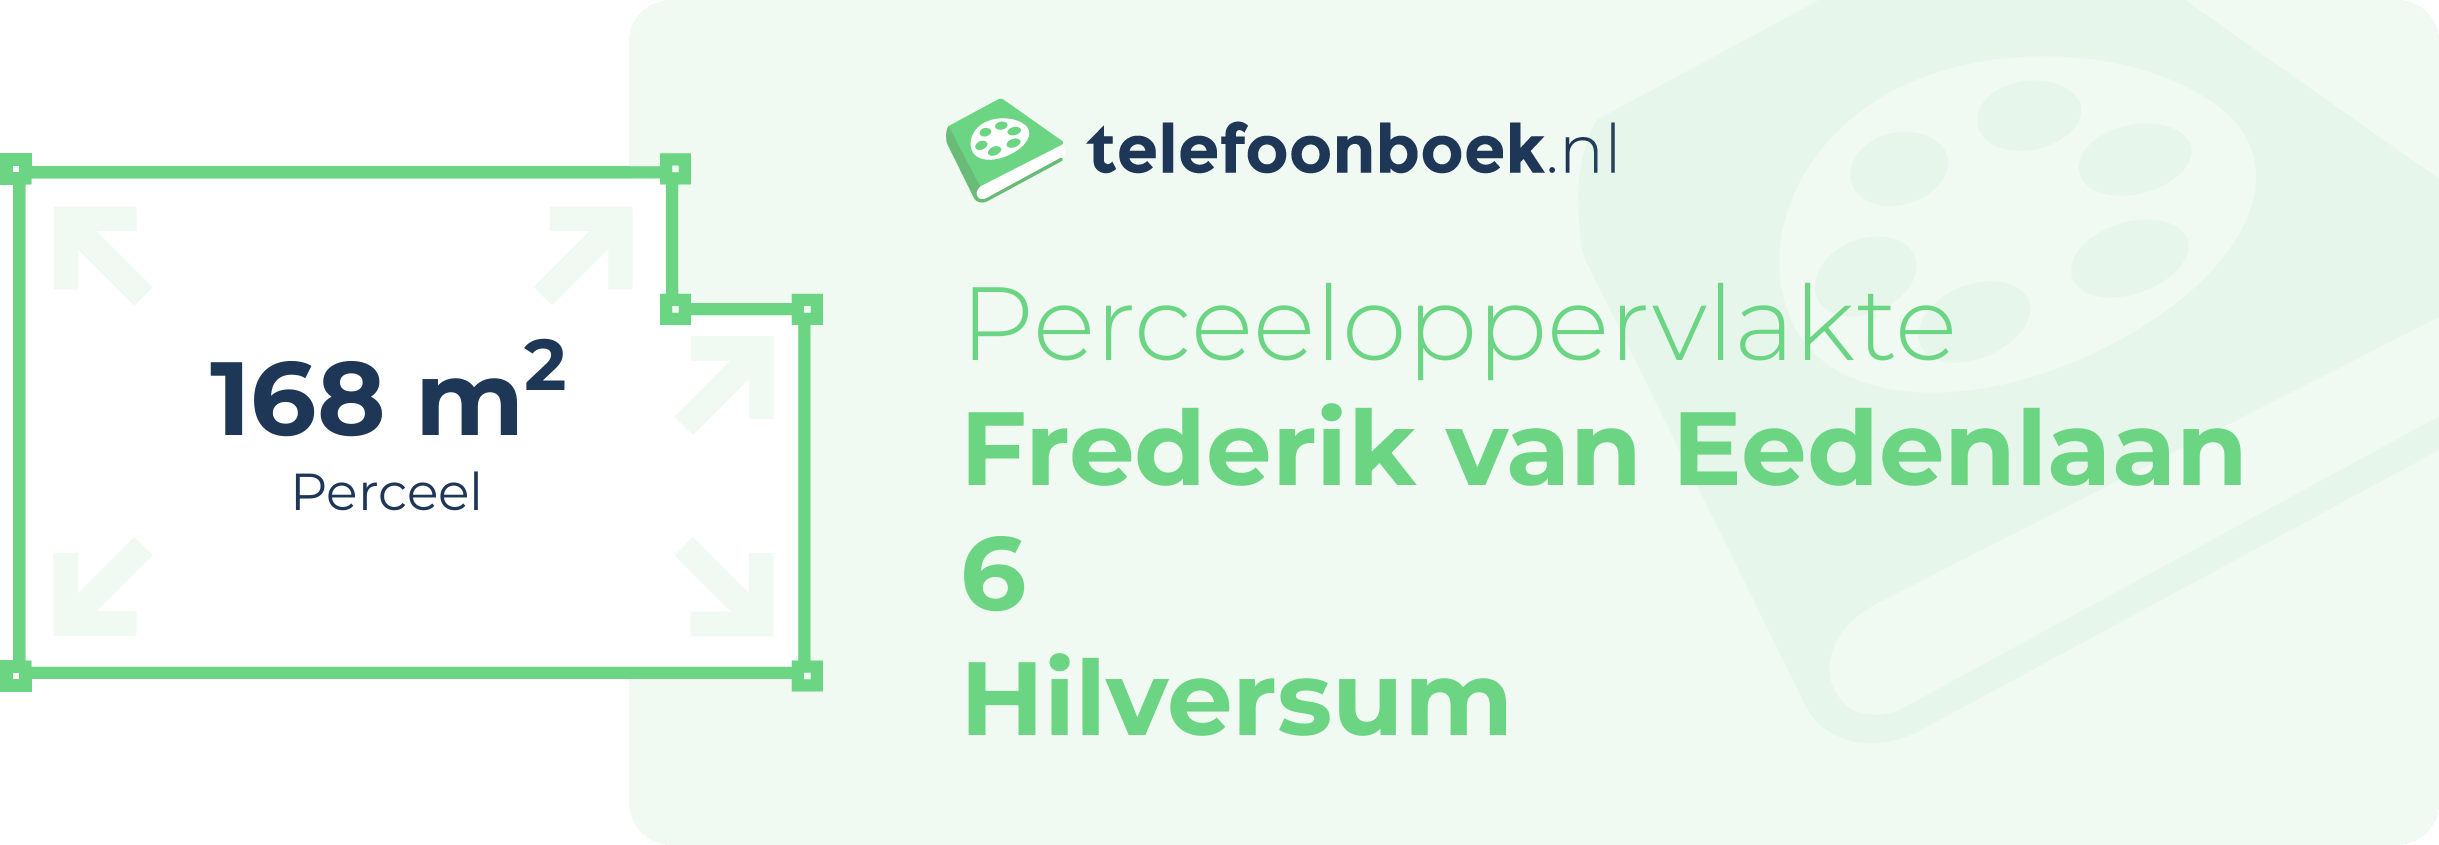 Perceeloppervlakte Frederik Van Eedenlaan 6 Hilversum